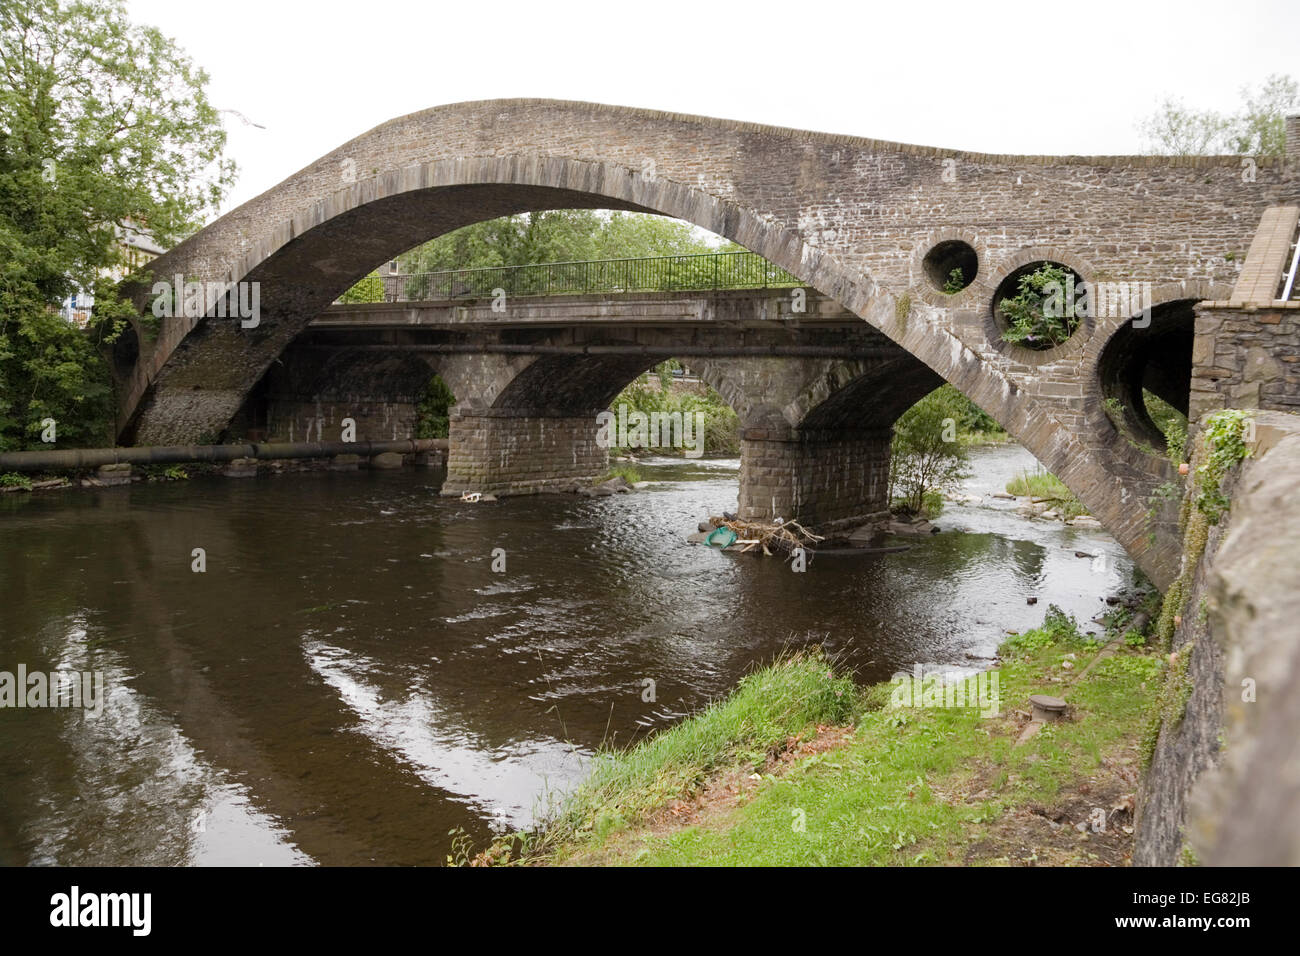 Le Vieux Pont, Pontypridd. Construit en 1756 - vue du côté nord. Le pont traverse la rivière Taff, juste avant qu'elle ne rencontre la rivière Cynon. Banque D'Images